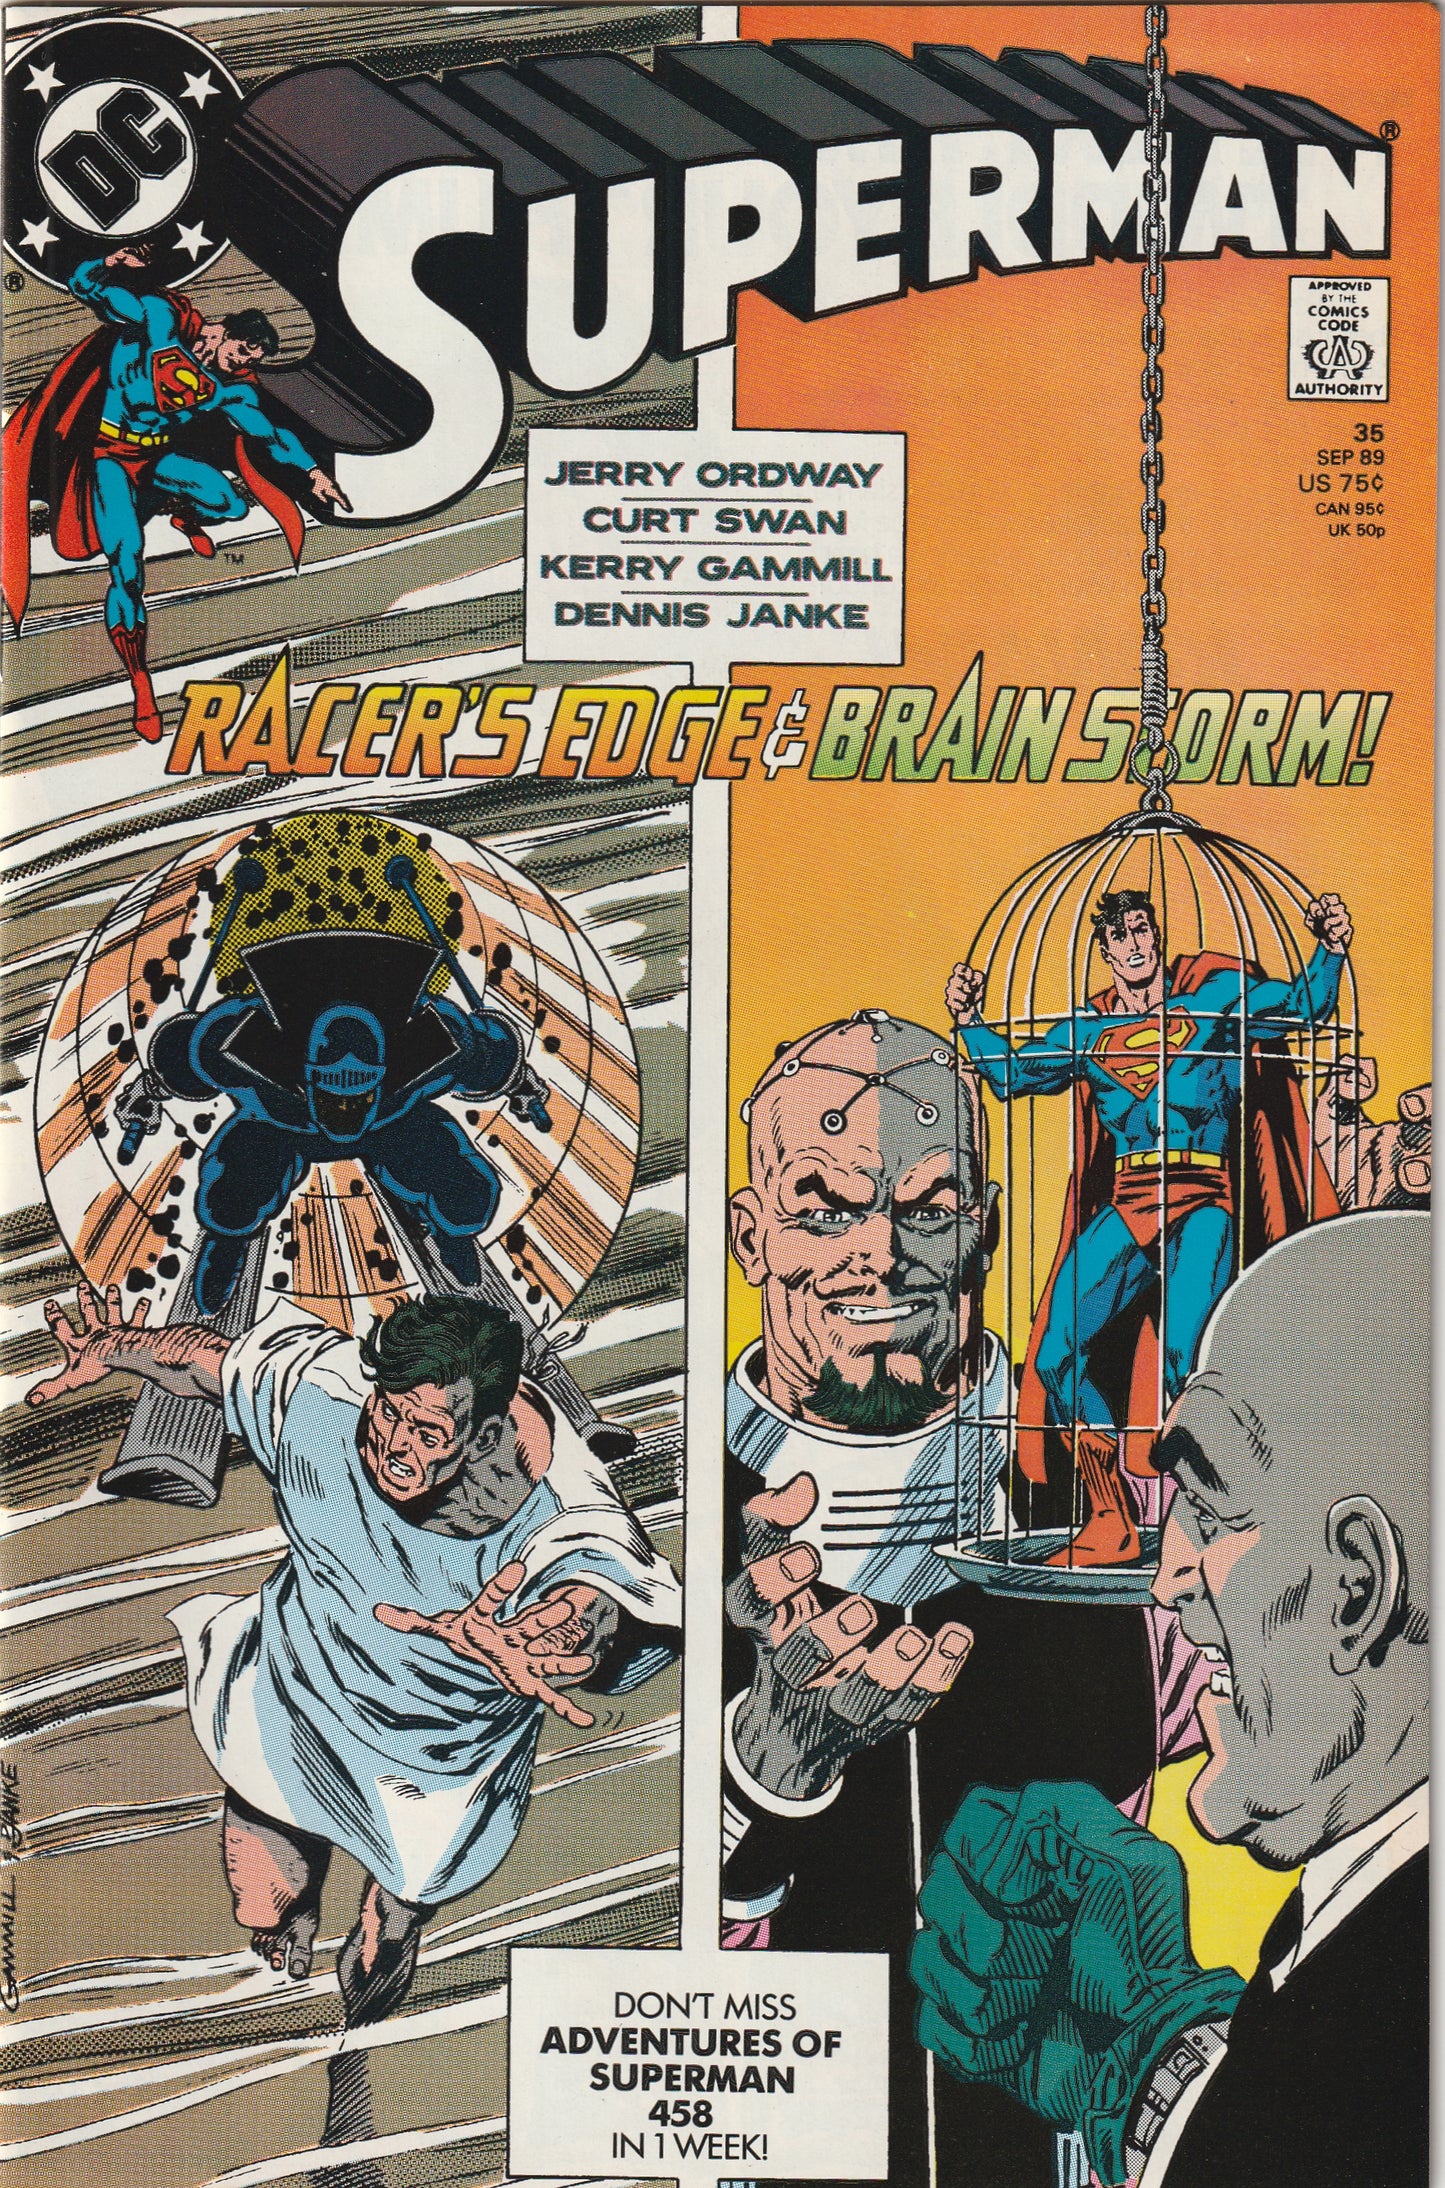 Superman #35 (Vol 2, 1989)